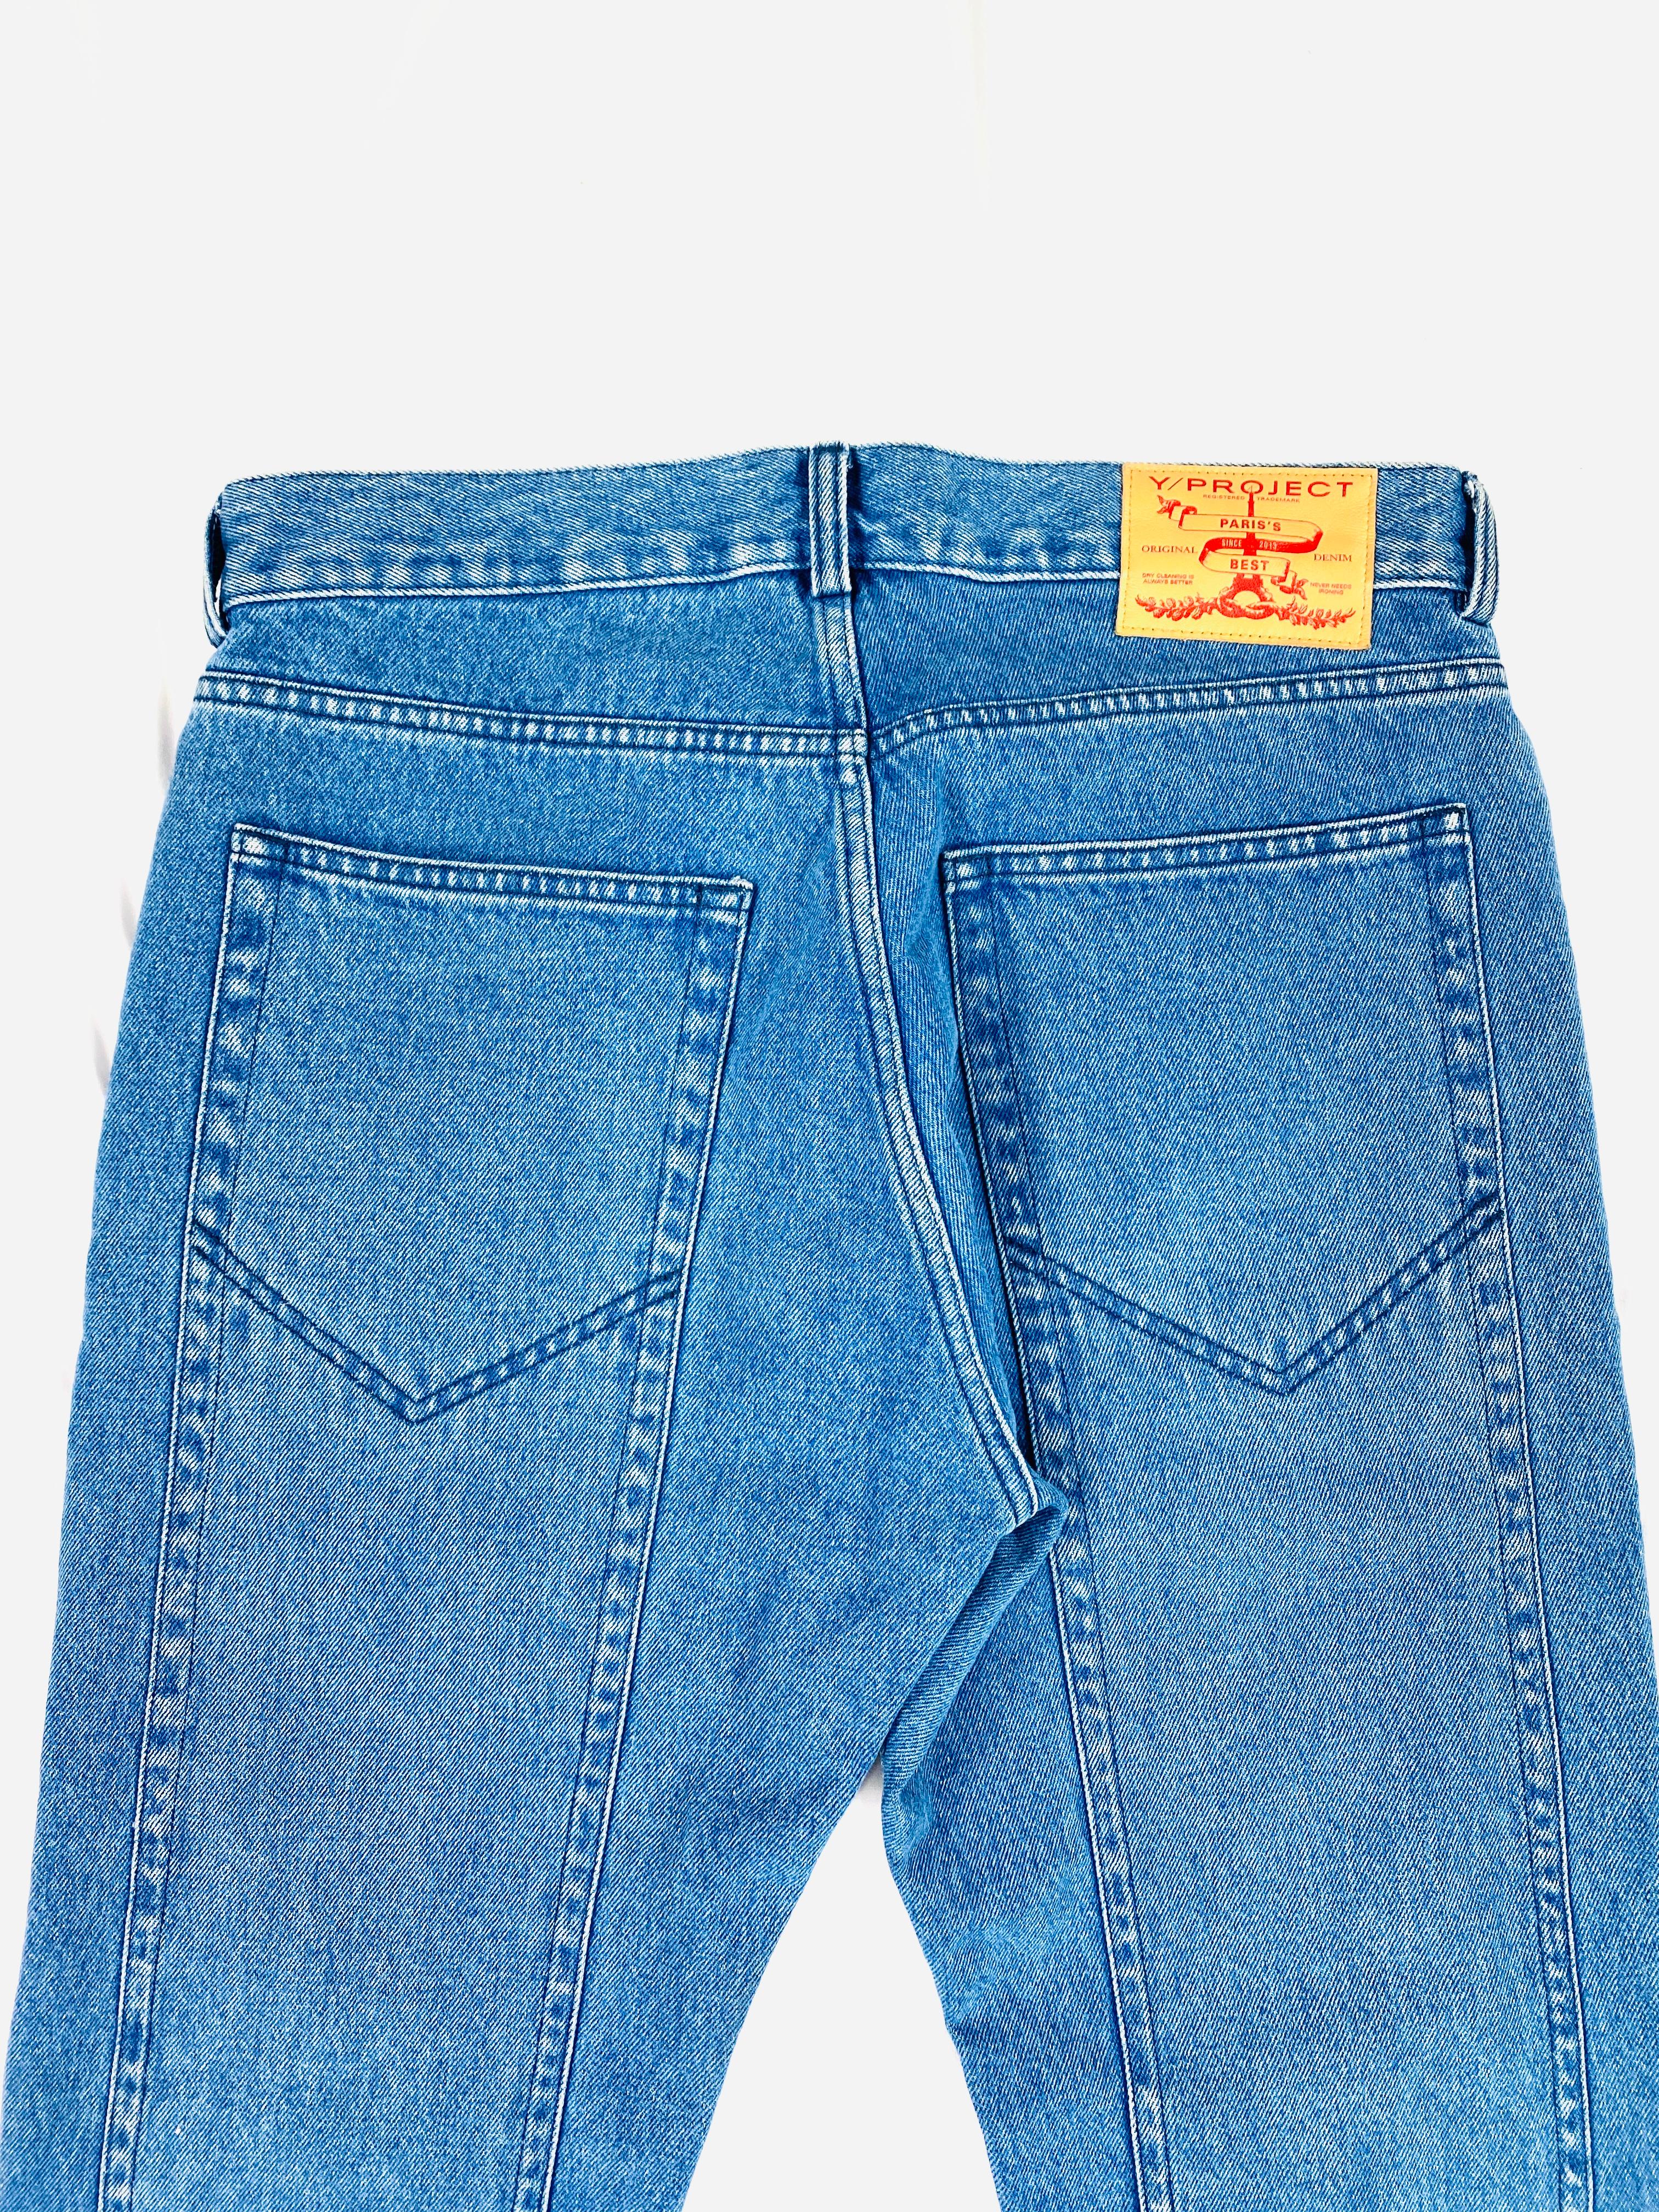 Women's or Men's Y/ Project Paris Light Blue Wash XL Pocket Denim Jeans Size S